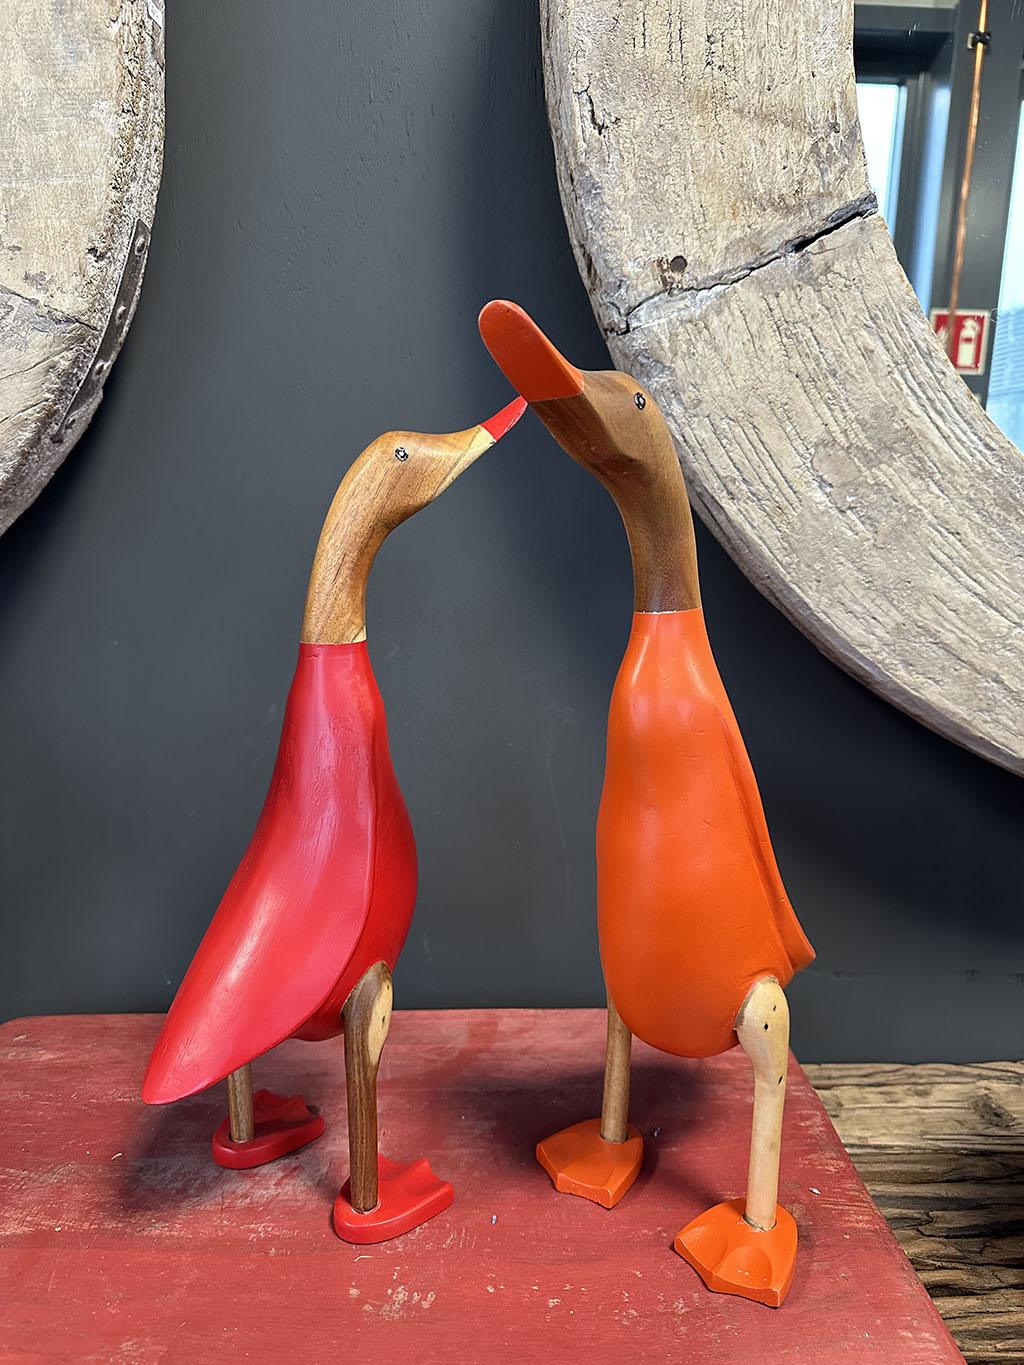 Houten eend in rood en oranje pakje is met de handgemaakt en beschilderd in een rood en oranje pakje, ze zijn stuk voor stuk uniek!